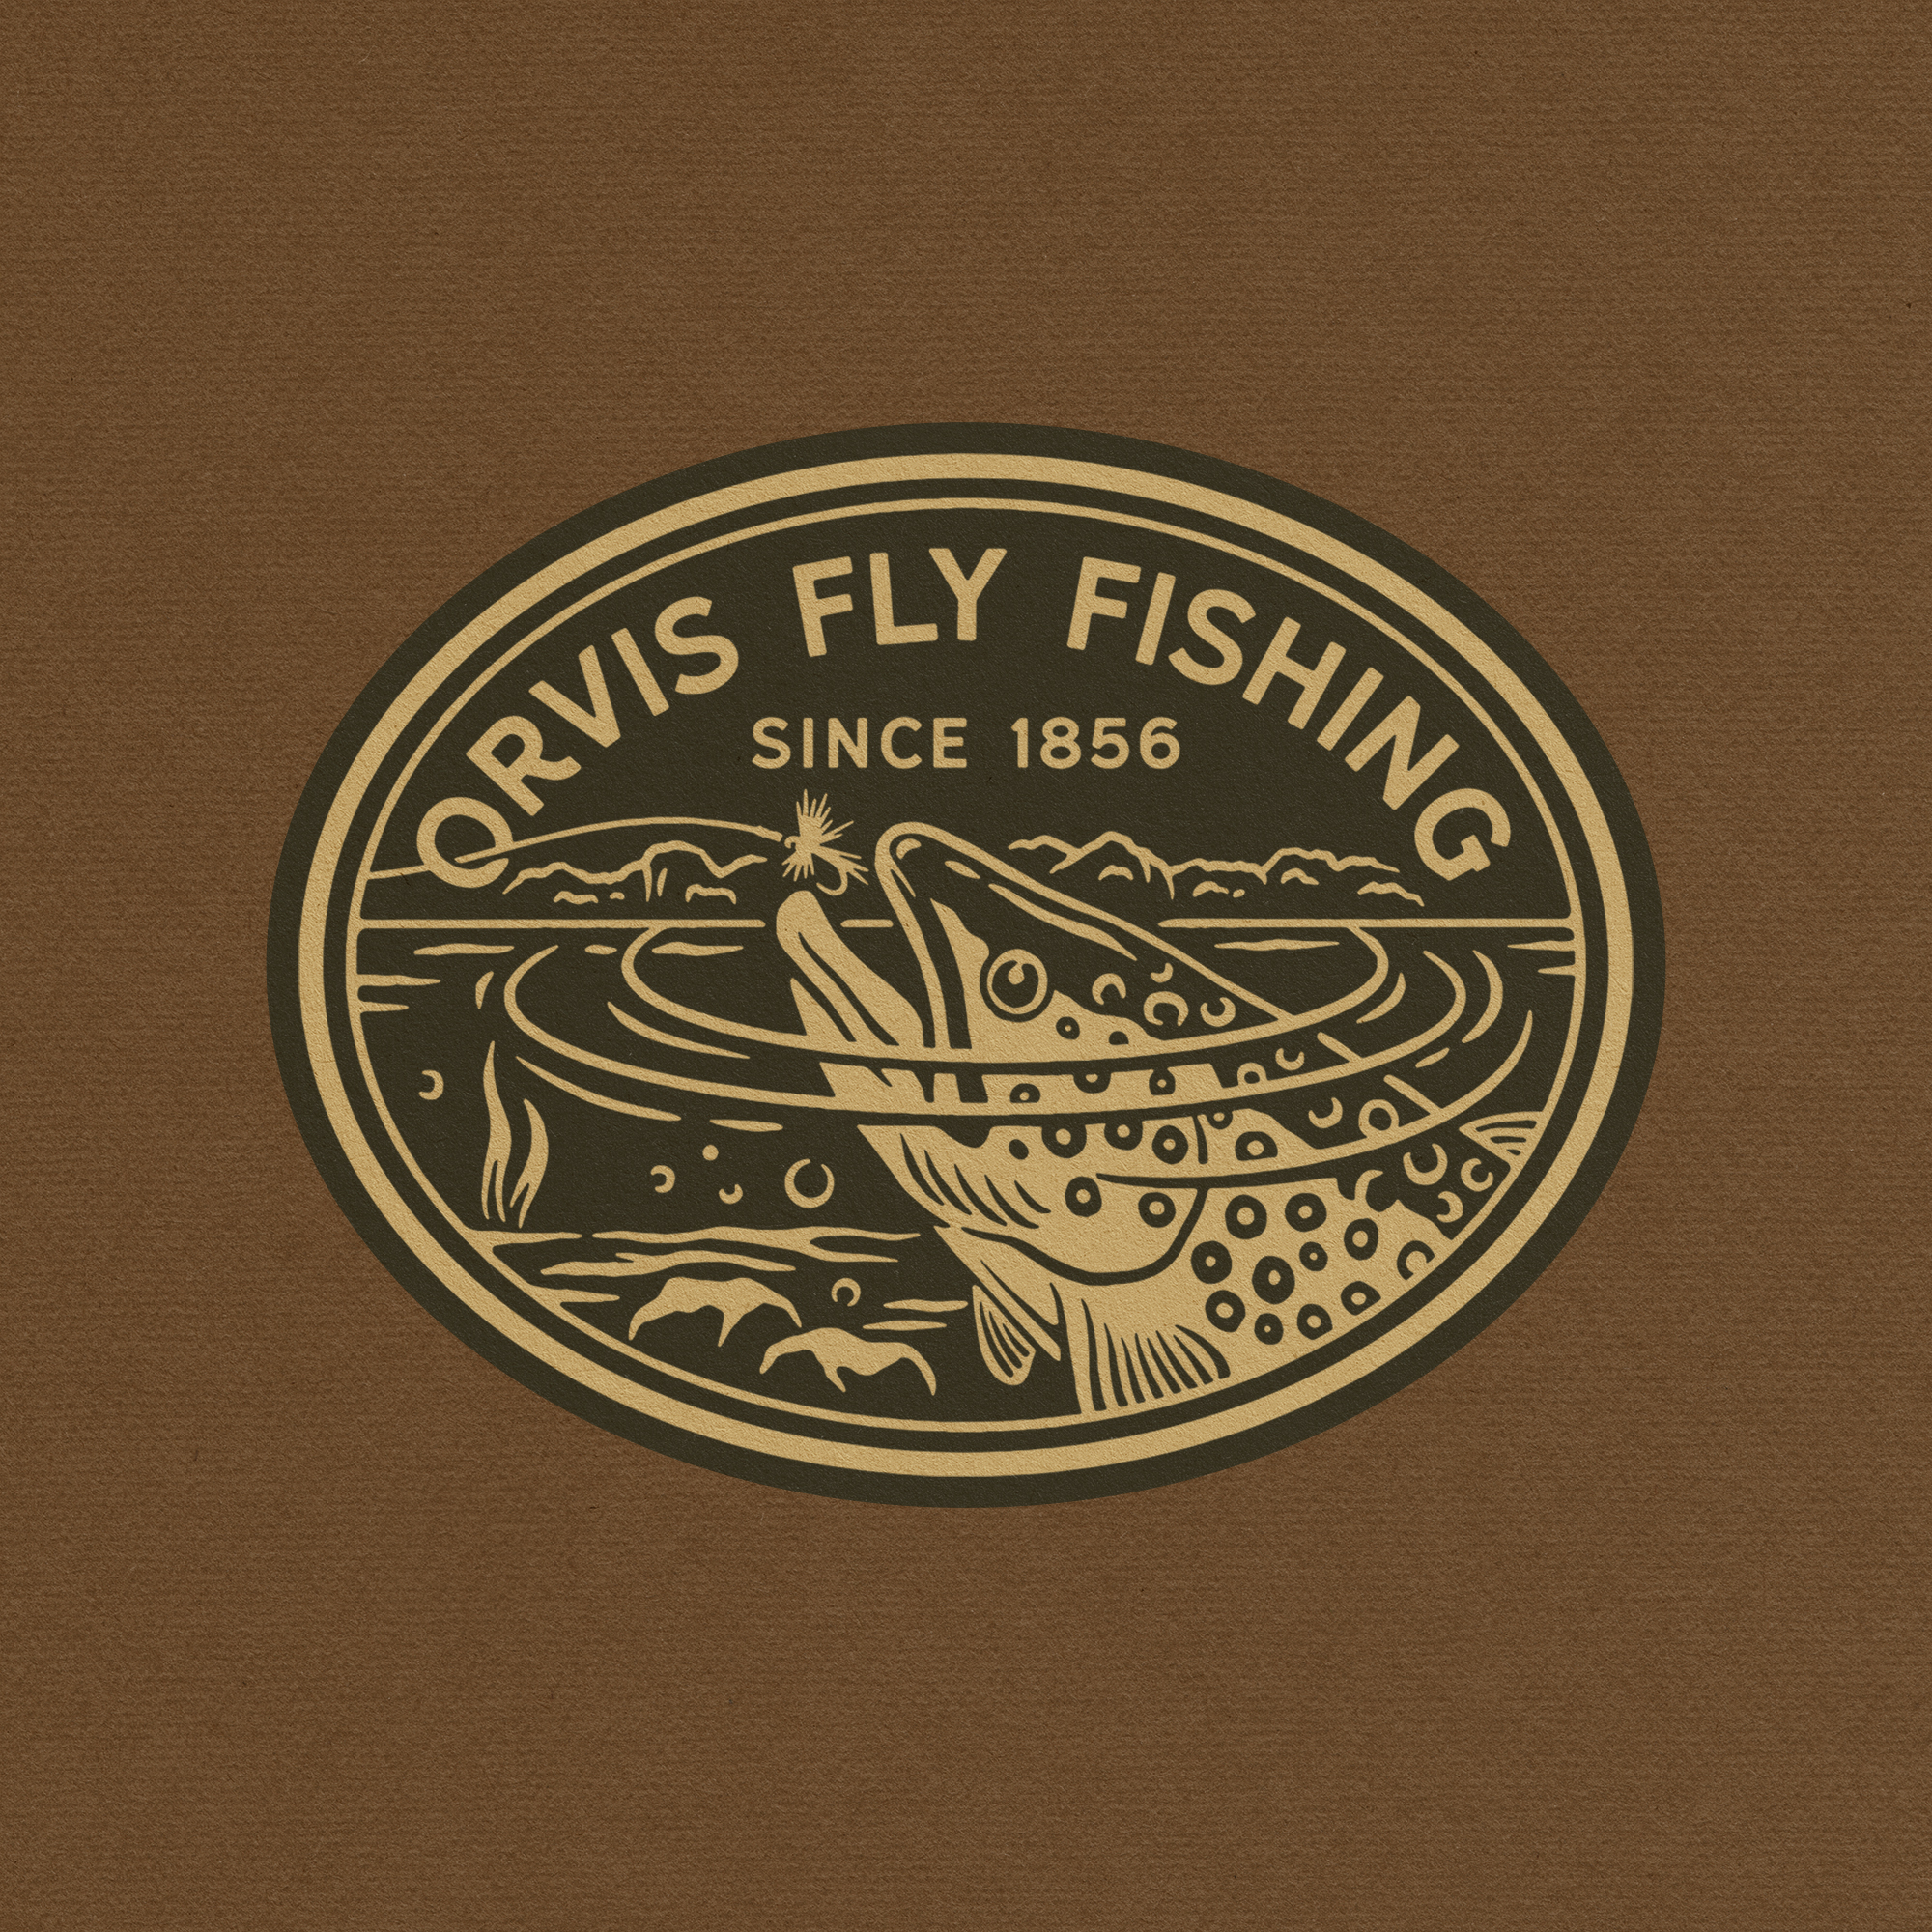 Orvis Fly Fishing by Daniel Sheridan on Dribbble